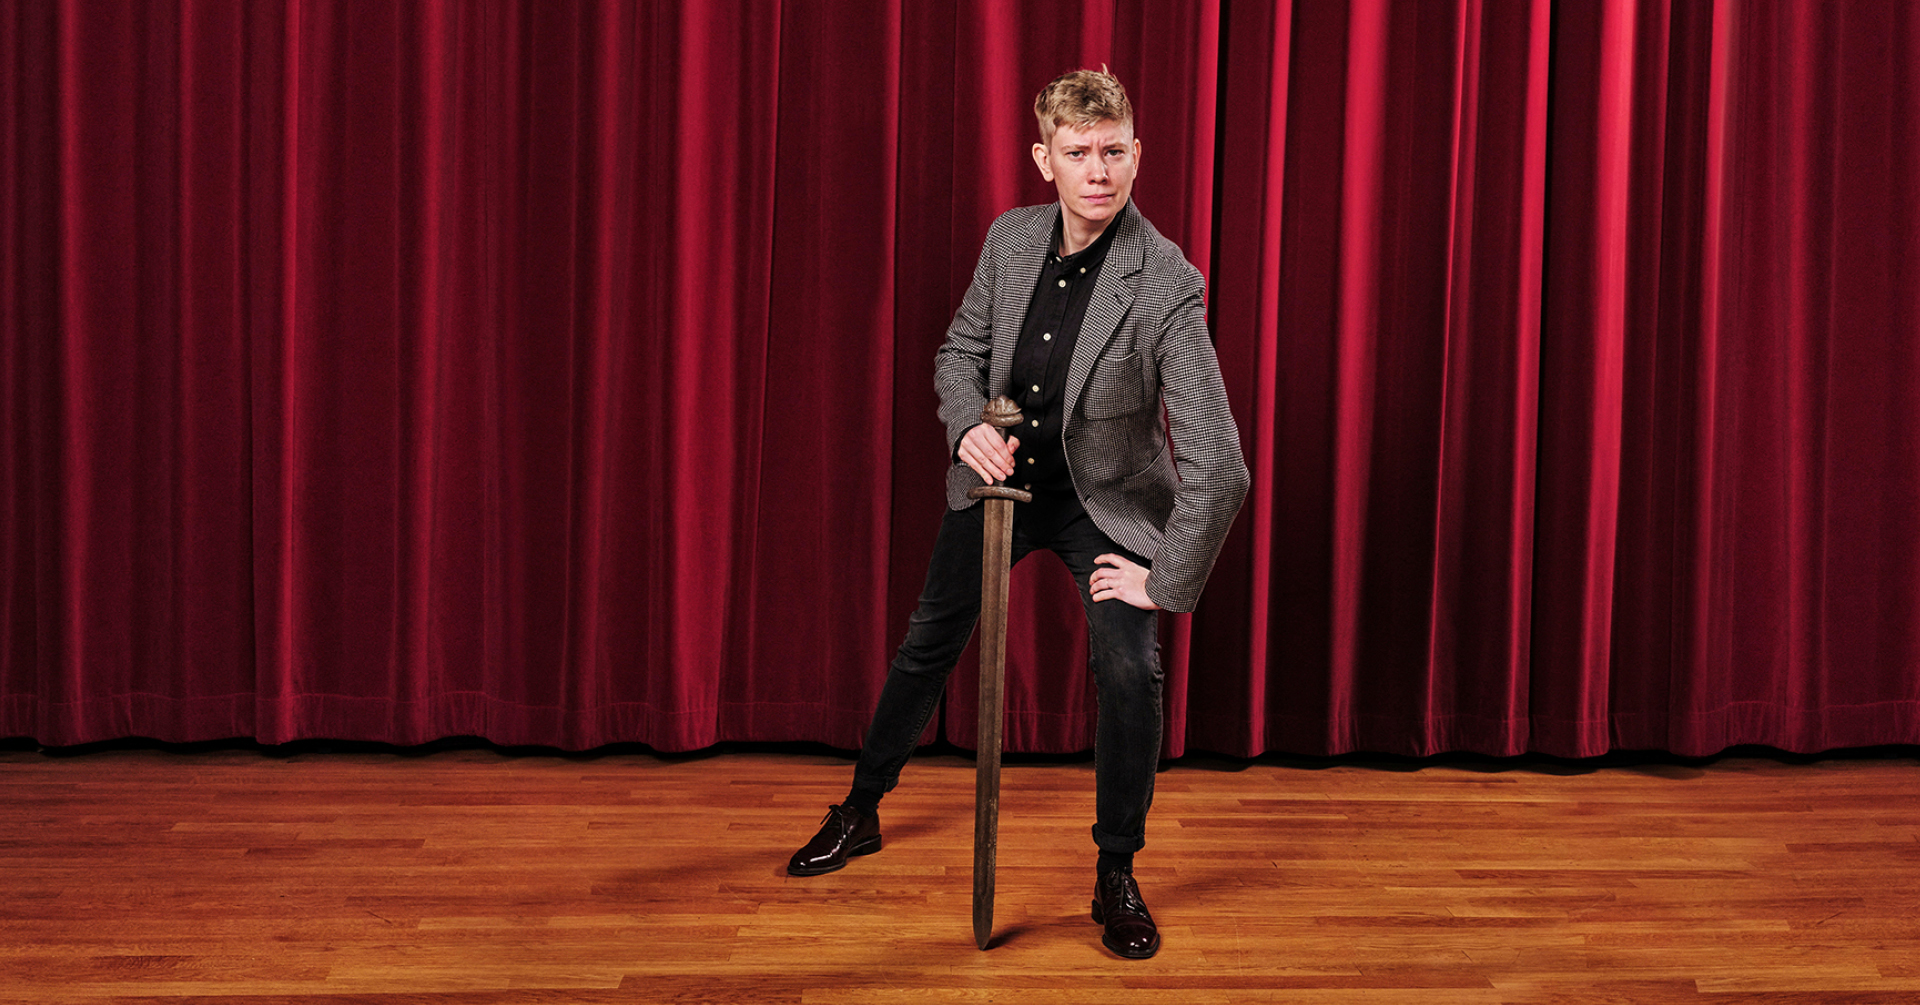 Moa Svan poserar med en svärd framför ett rött teaterdraperi